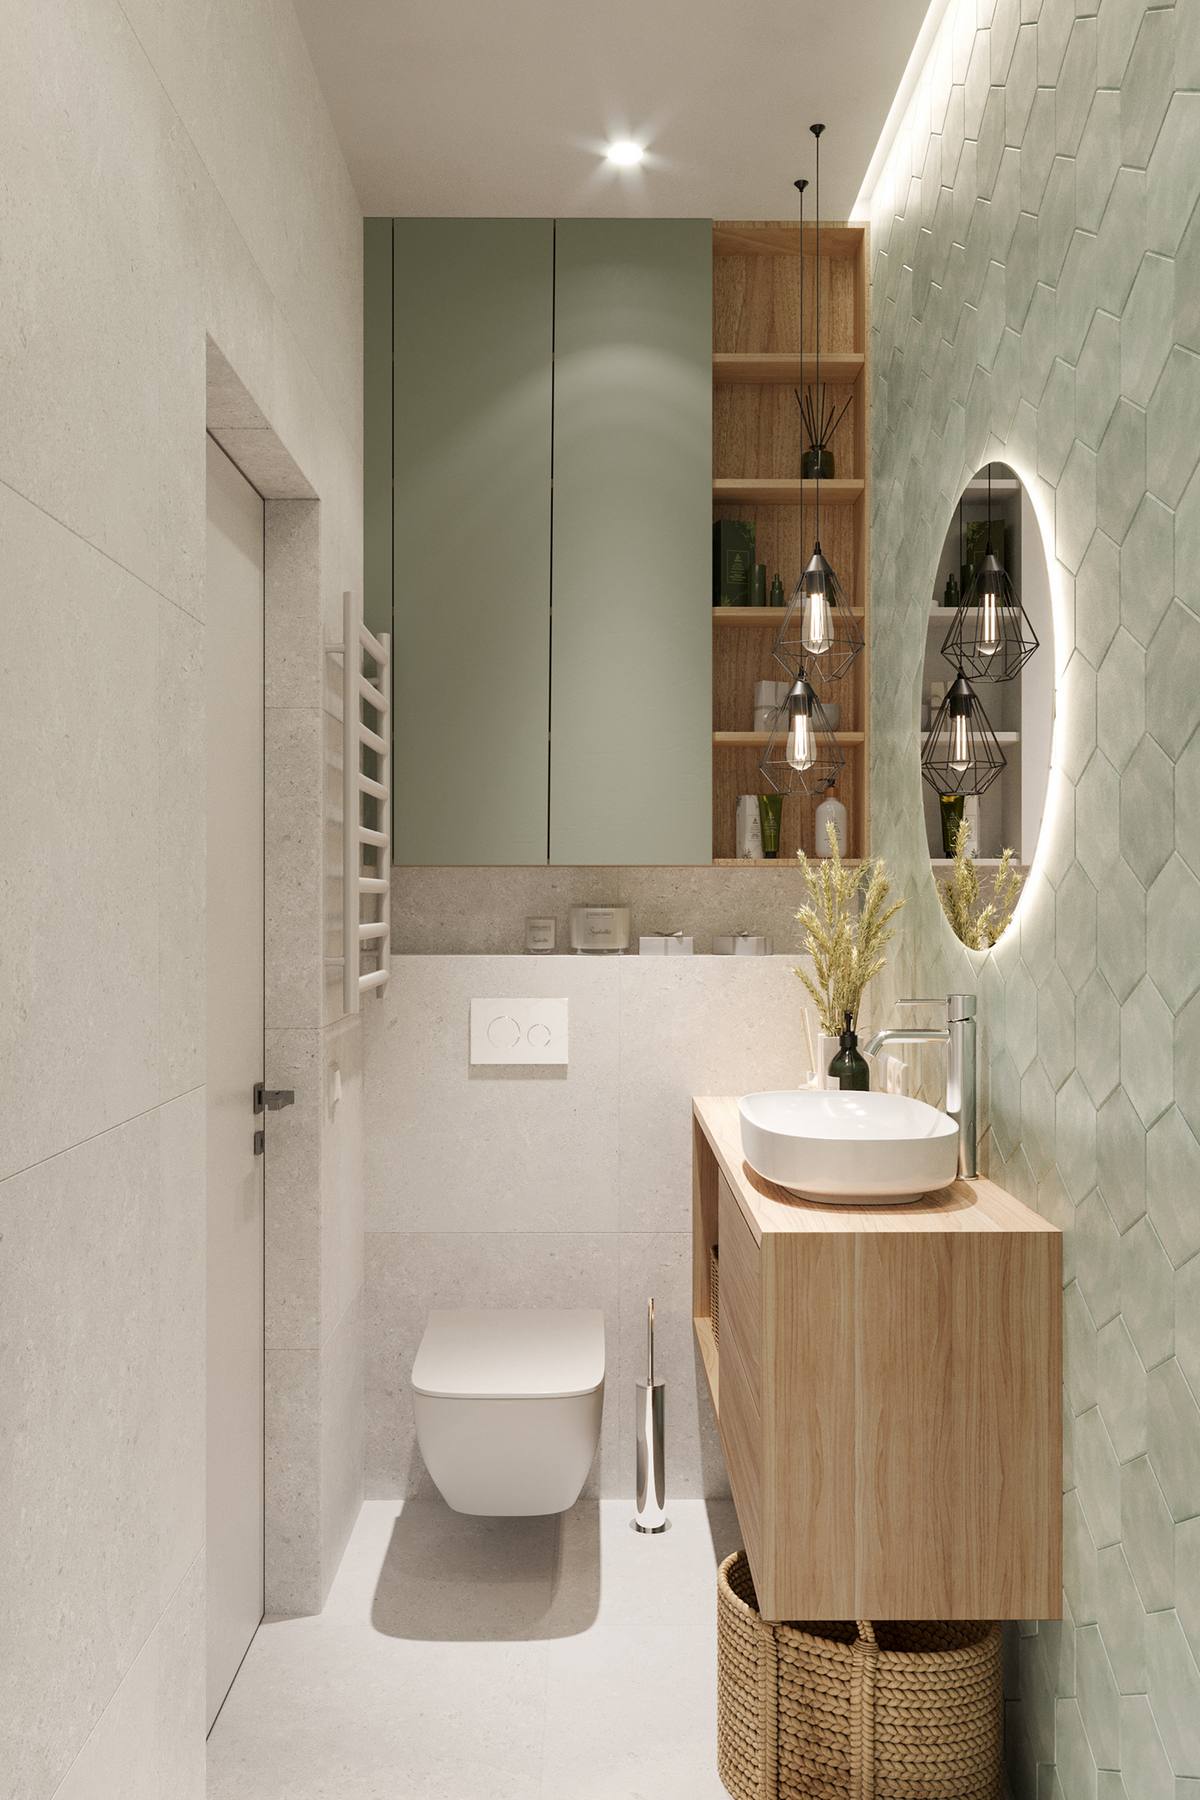 Phòng tắm của bé tuy nhỏ nhưng không kém phần xinh xắn với trang thiết bị hiện đại, bồn toilet gắn tường cùng hệ thống tủ lưu trữ tiện nghi.